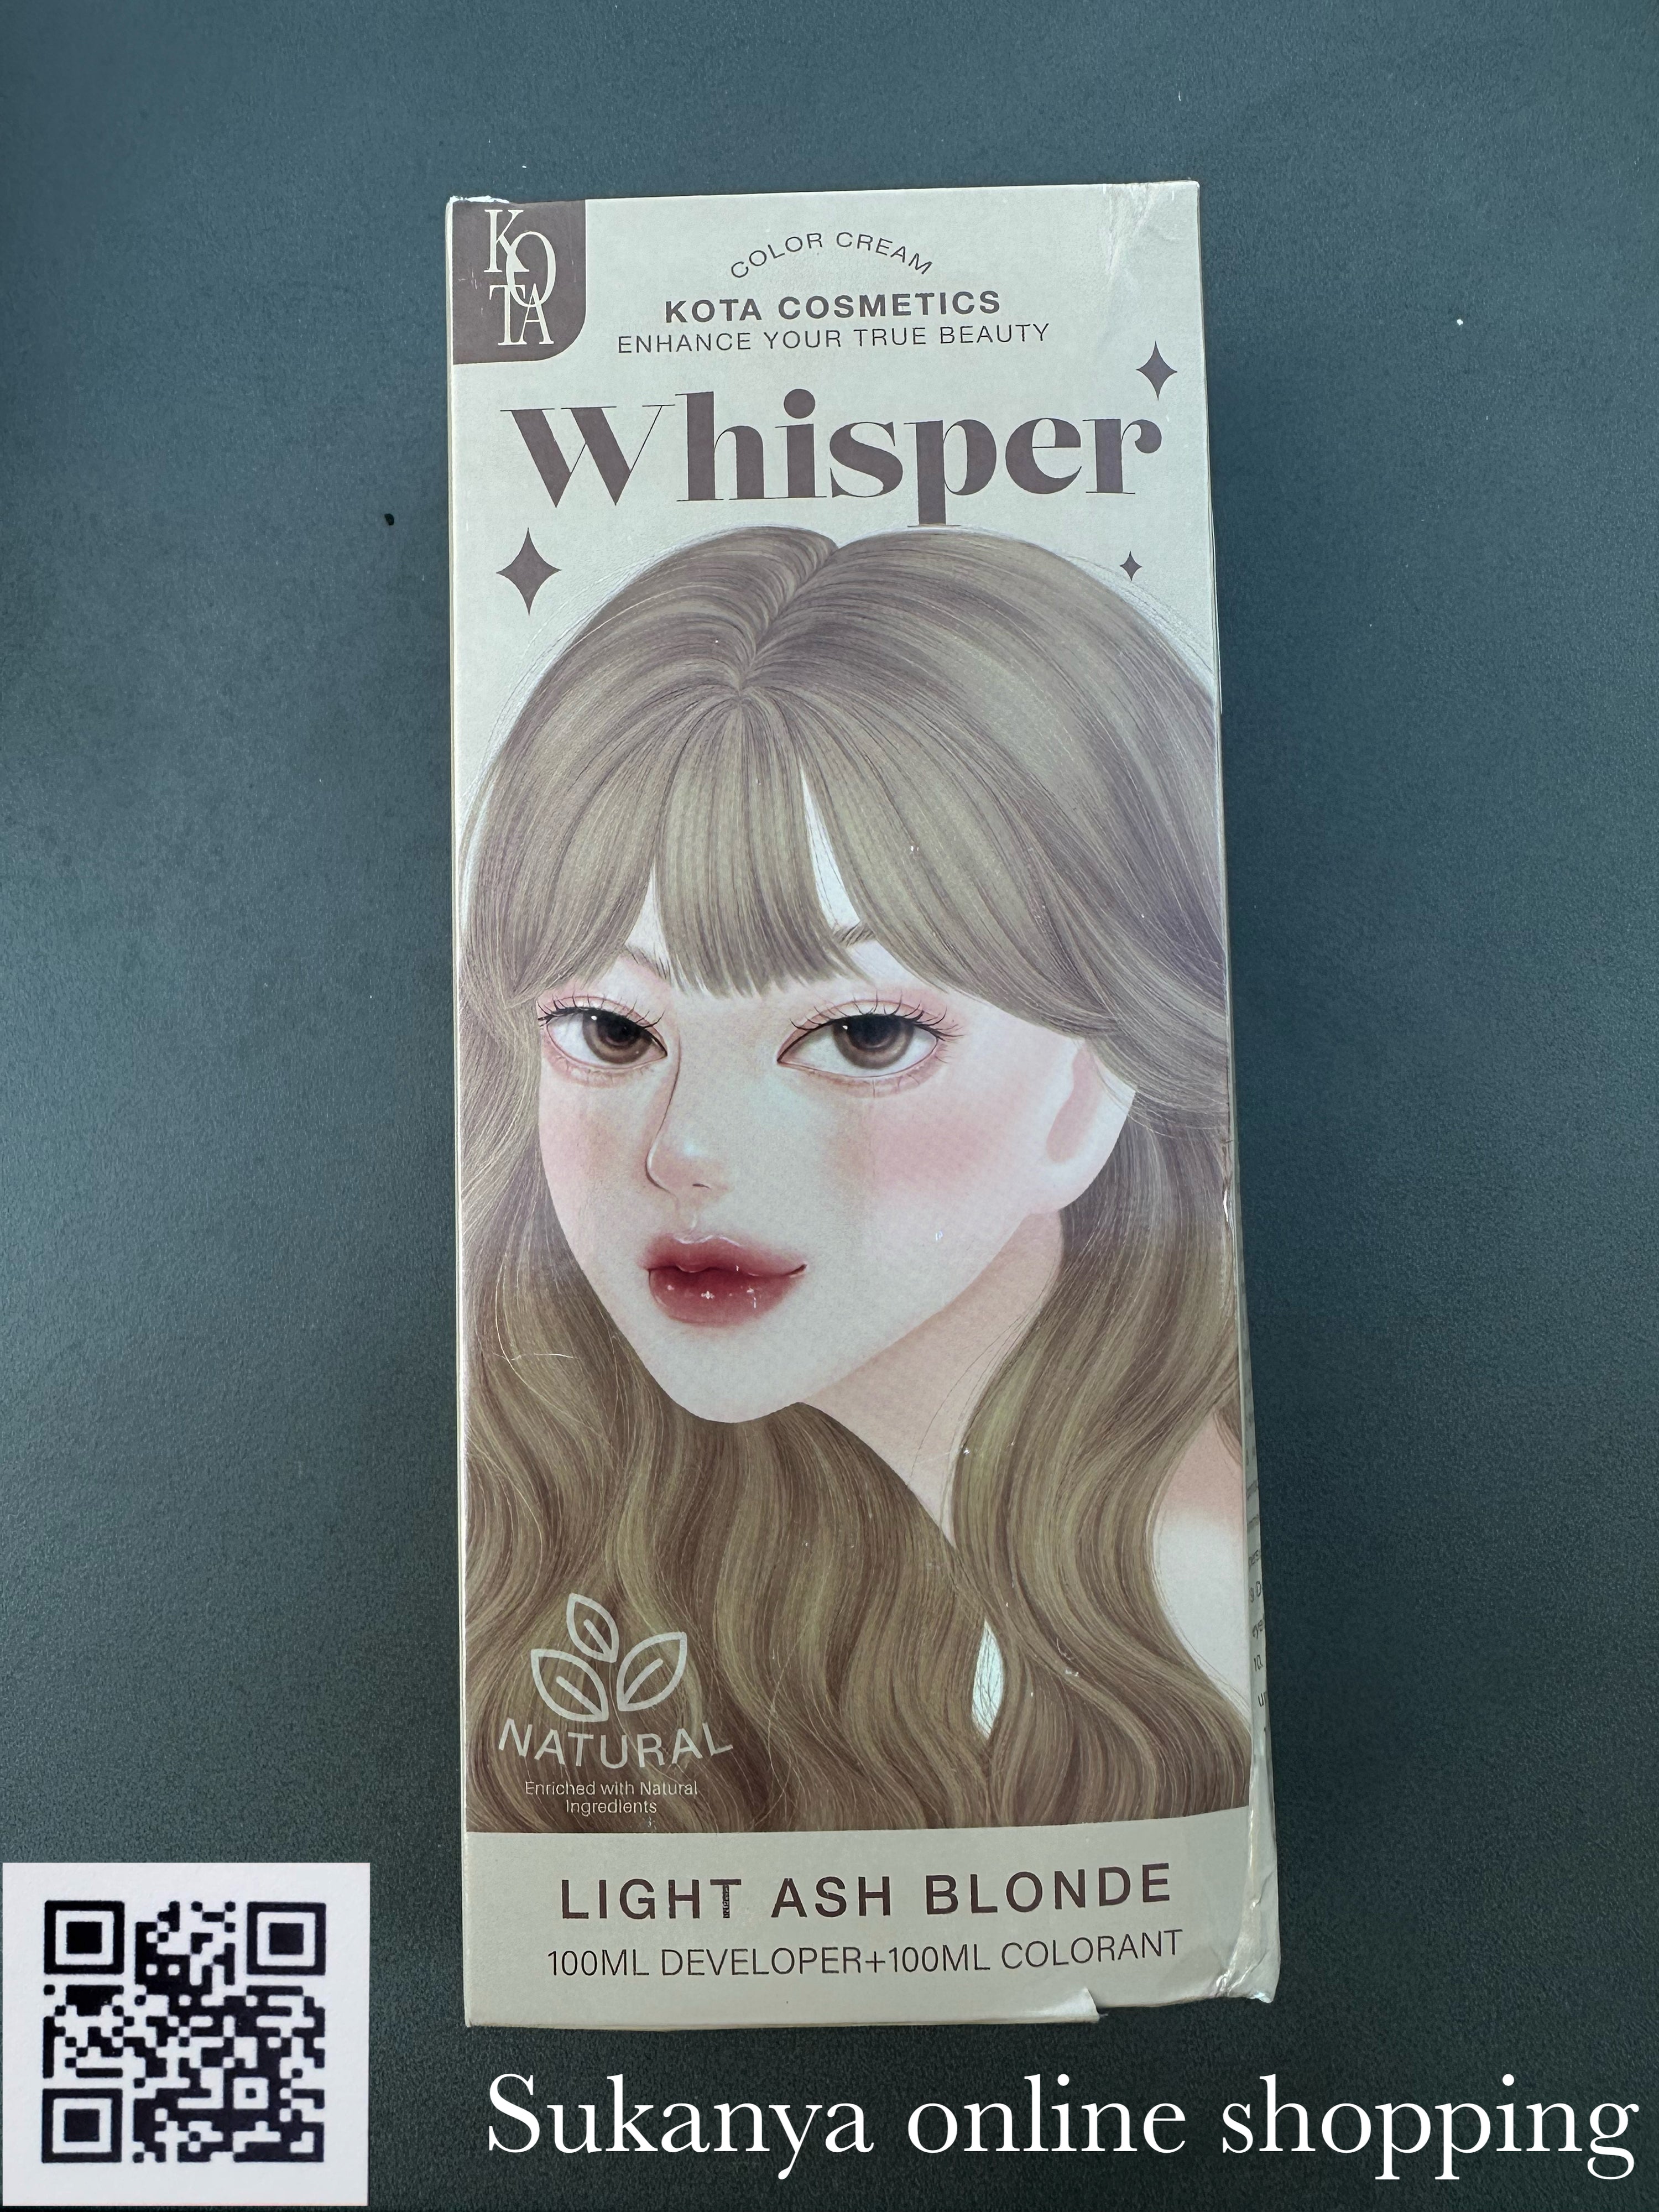 ยาย้อมผม-โคทา คอสเมติก ครีม วิปเปอร์ (ไลท์ เอช บลอนด์) Kota cosmetics Color Cream Whisper (Light Ash Blonde)